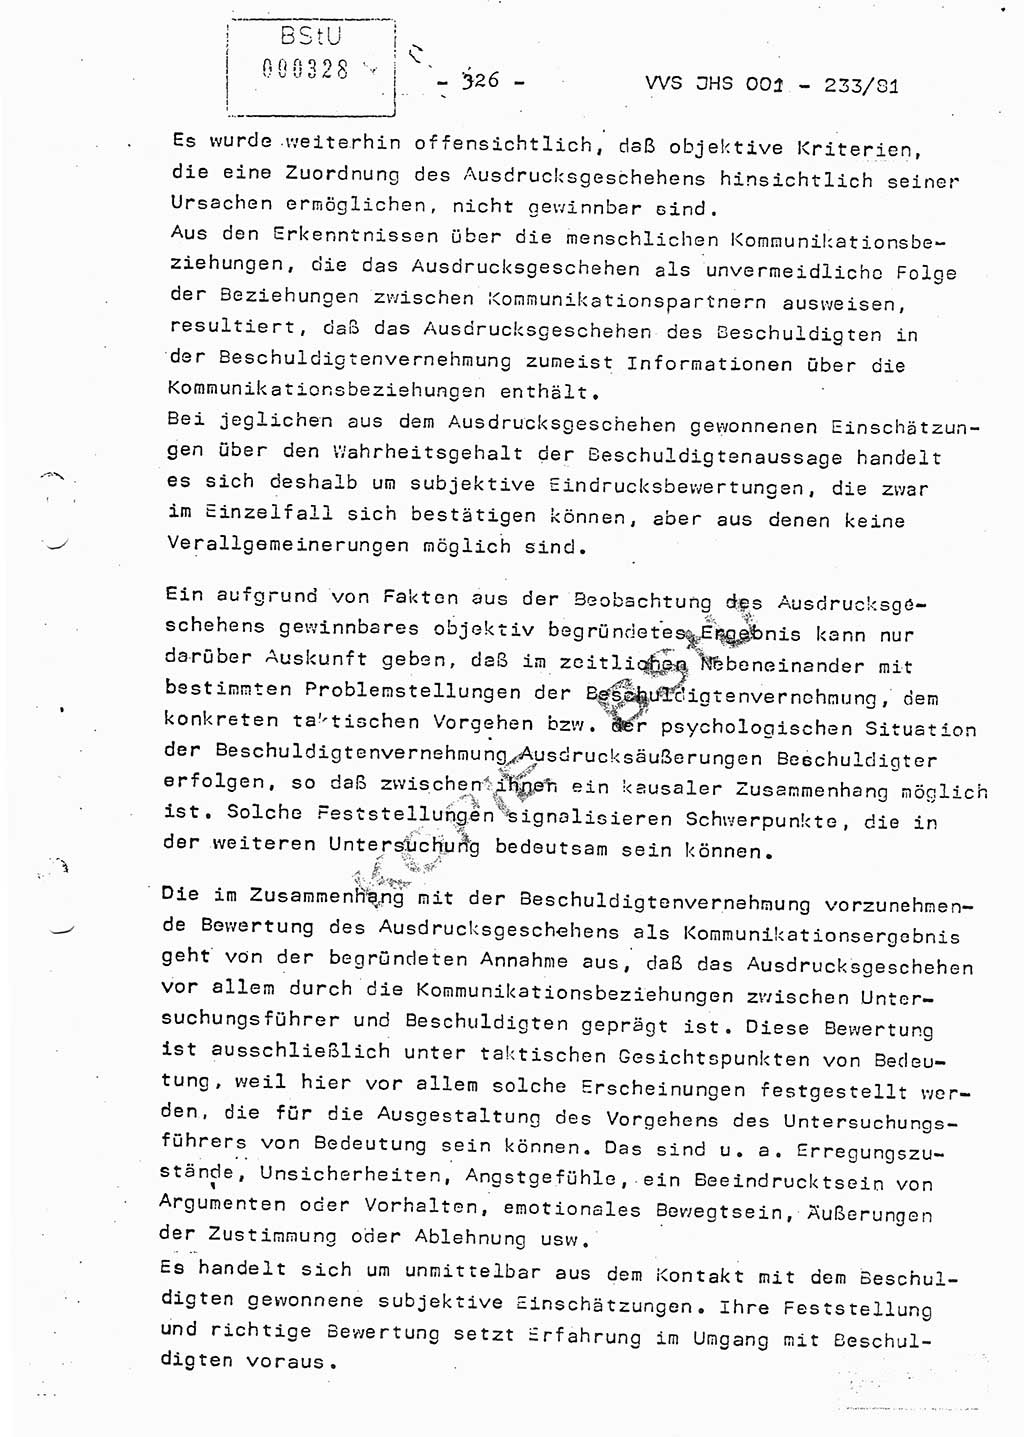 Dissertation Oberstleutnant Horst Zank (JHS), Oberstleutnant Dr. Karl-Heinz Knoblauch (JHS), Oberstleutnant Gustav-Adolf Kowalewski (HA Ⅸ), Oberstleutnant Wolfgang Plötner (HA Ⅸ), Ministerium für Staatssicherheit (MfS) [Deutsche Demokratische Republik (DDR)], Juristische Hochschule (JHS), Vertrauliche Verschlußsache (VVS) o001-233/81, Potsdam 1981, Blatt 326 (Diss. MfS DDR JHS VVS o001-233/81 1981, Bl. 326)